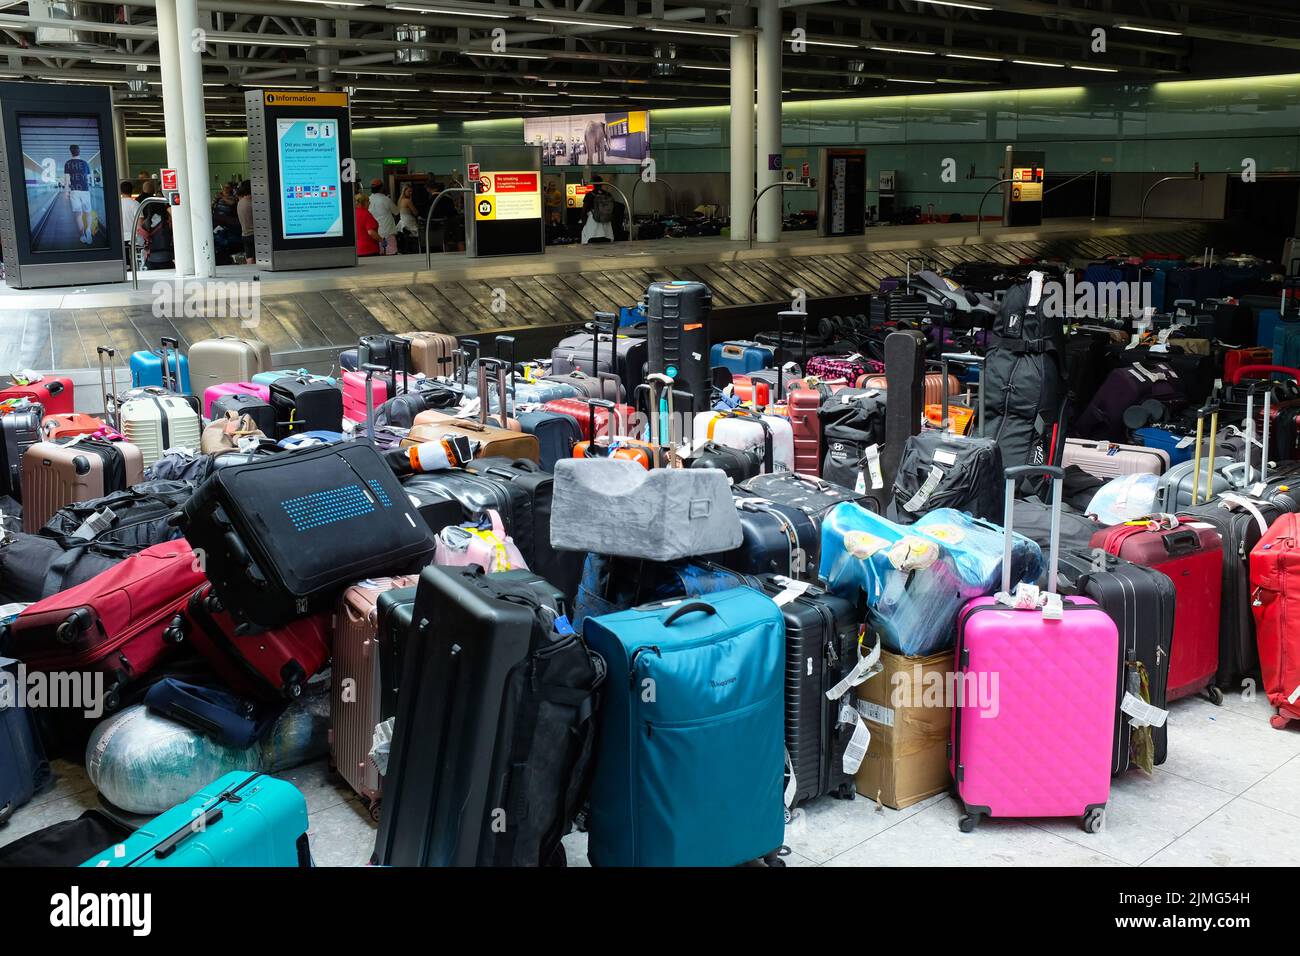 Alcune delle cosiddette "montagne dei bagagli" che hanno accolto i viaggiatori in arrivo all'aeroporto Heathrow di Londra nel luglio 2022. Foto Stock